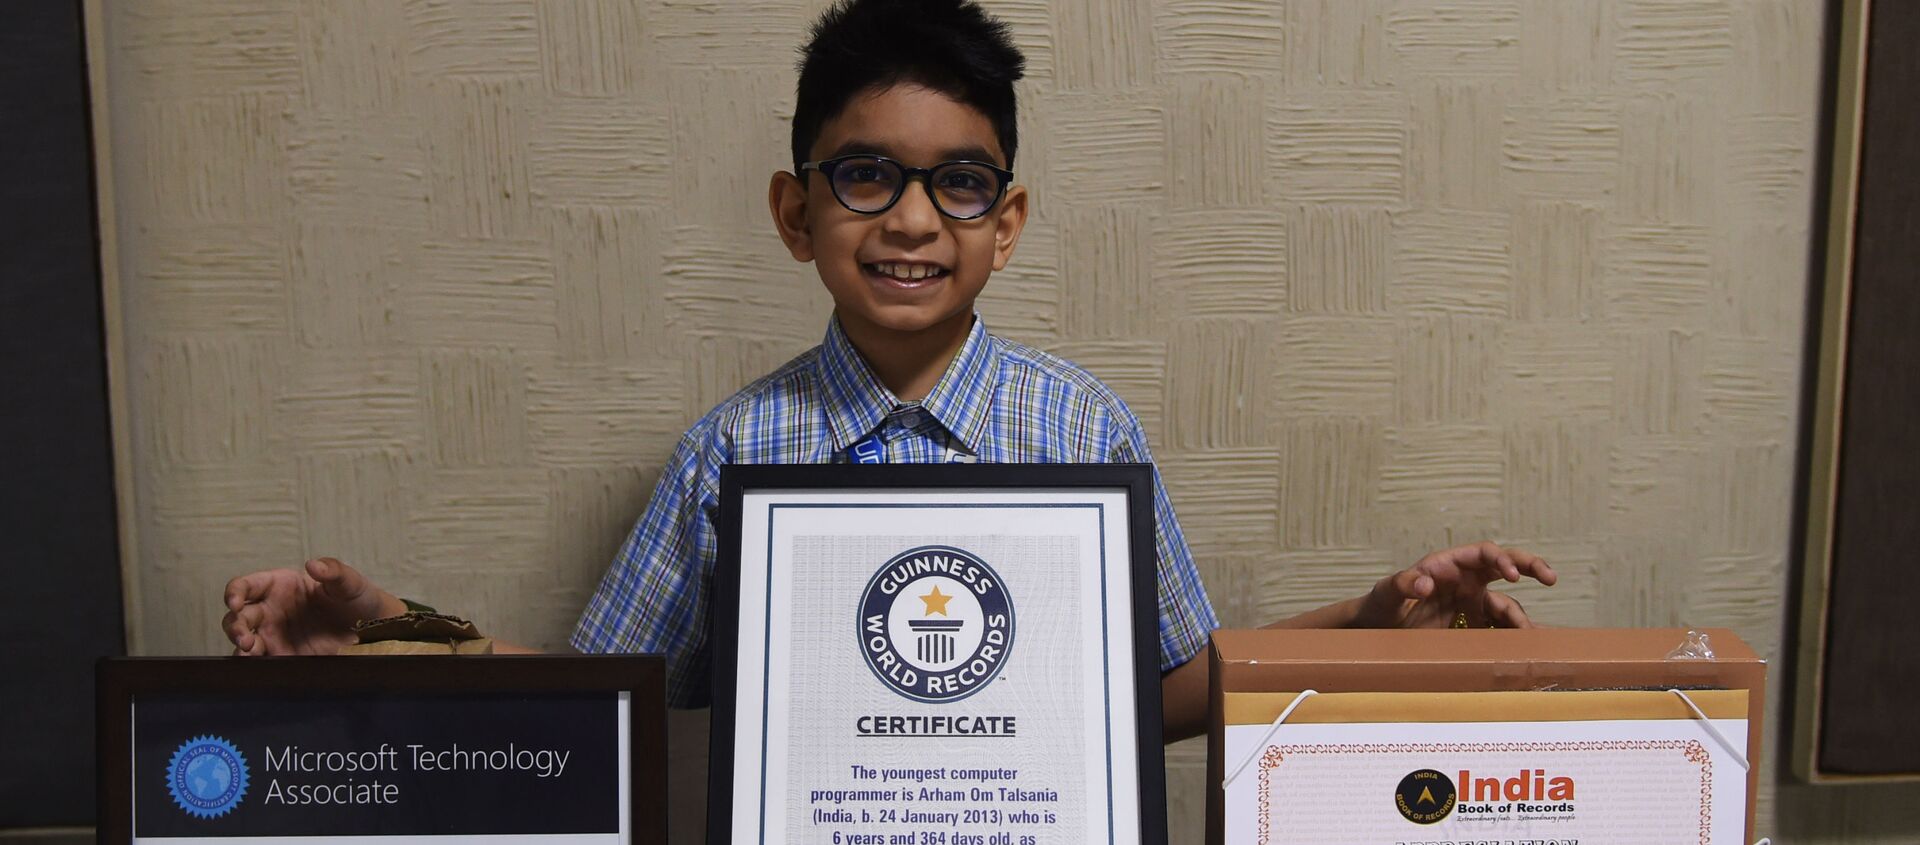 7-летний Архам Ом Талсания вошел в Книгу рекордов Гиннеса как самый молодой программист в мире - Sputnik 日本, 1920, 17.11.2020